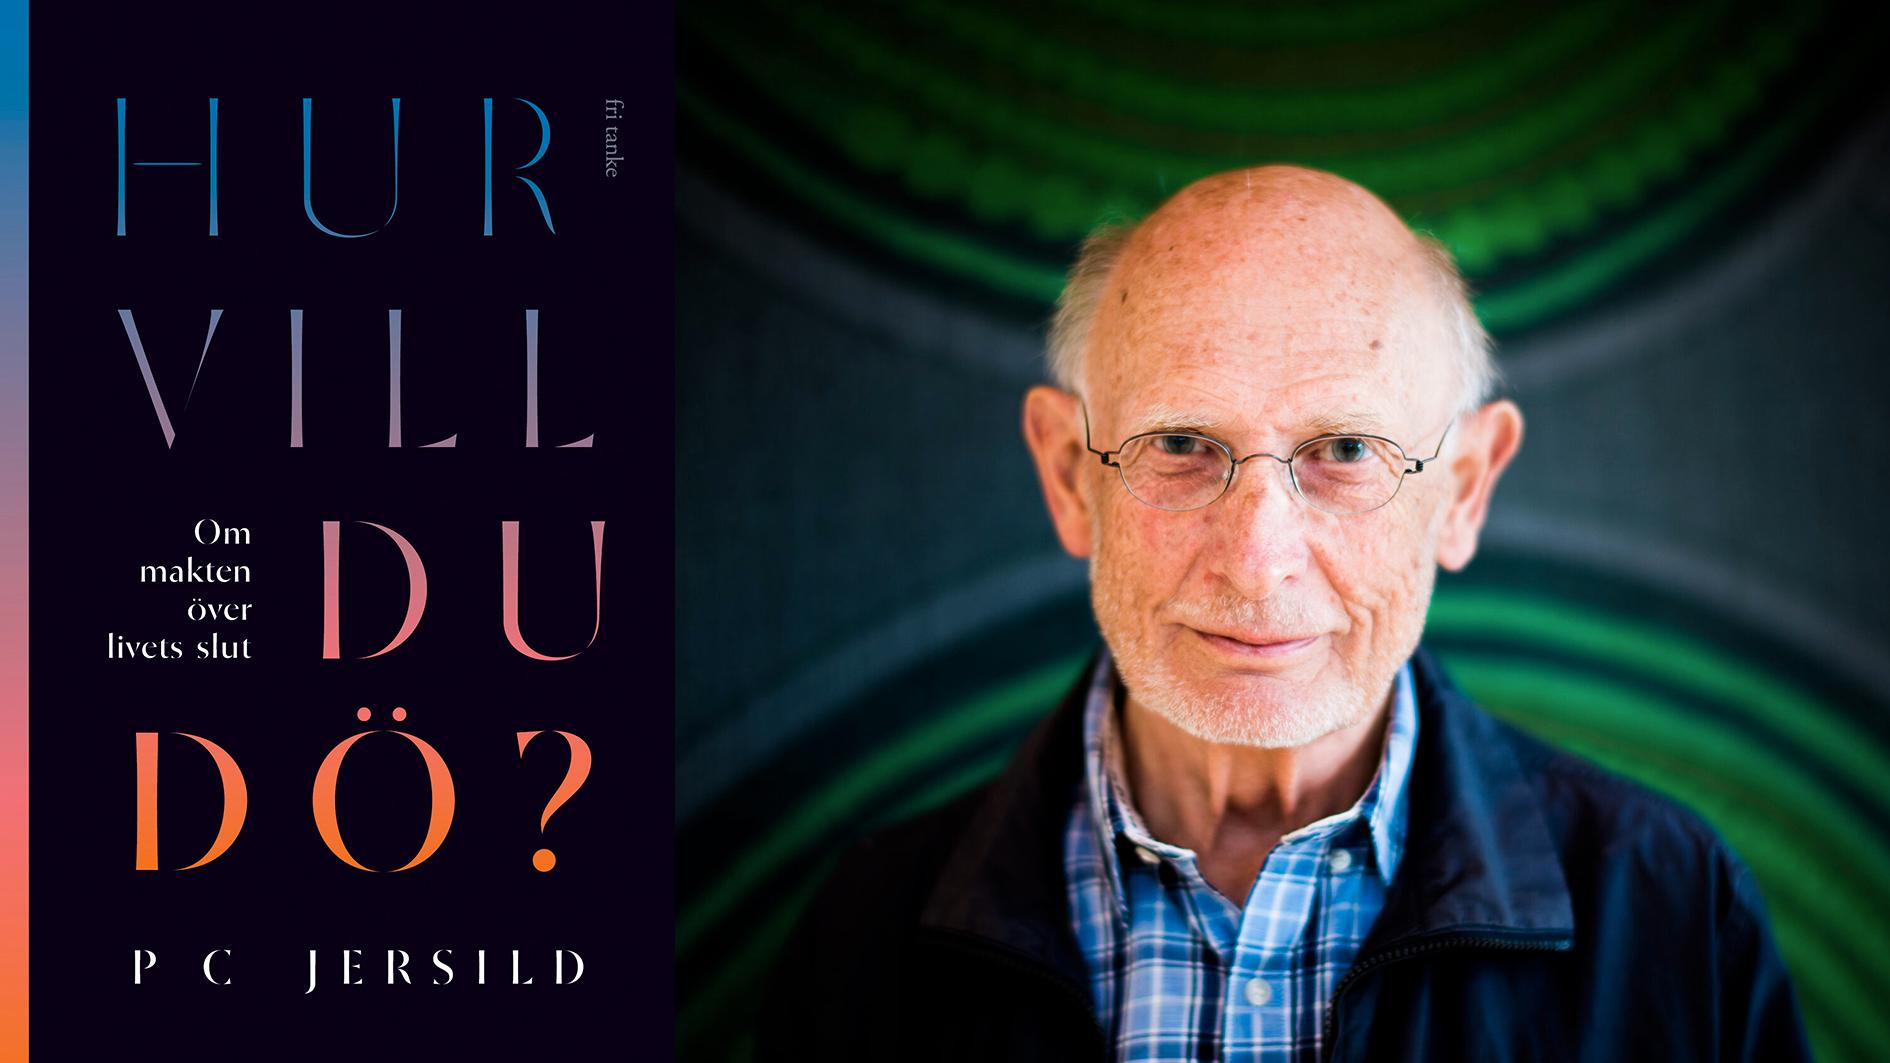 P C Jersild, läkare och författare (född 1935) utkommer med en bok om dödshjälp.